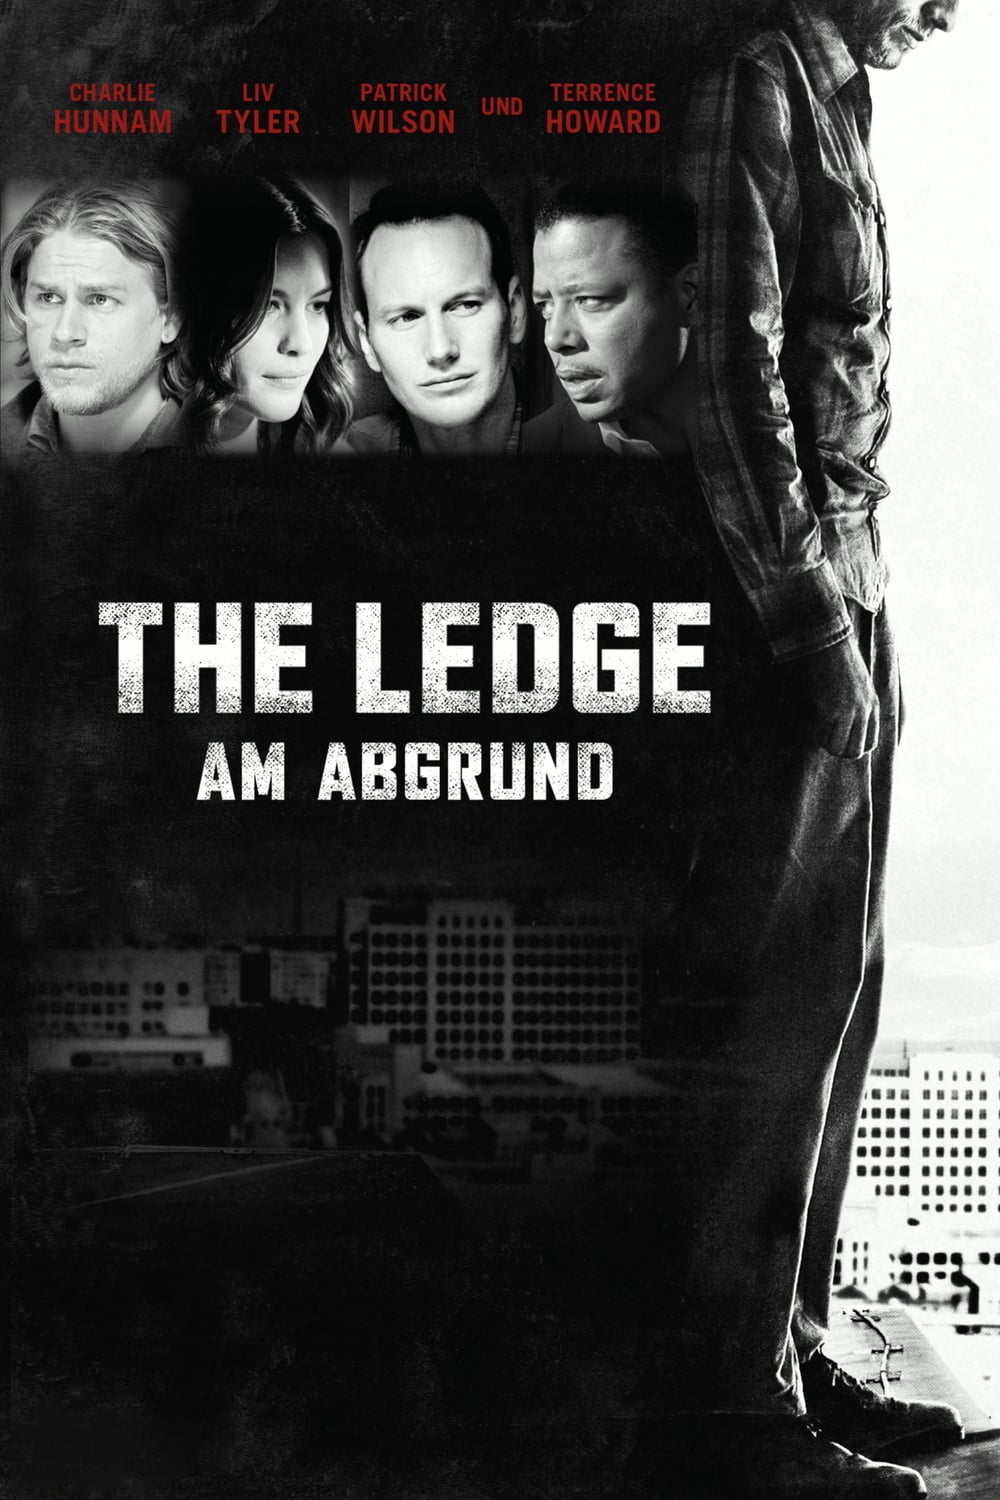 Plakat von "The Ledge - Am Abgrund"